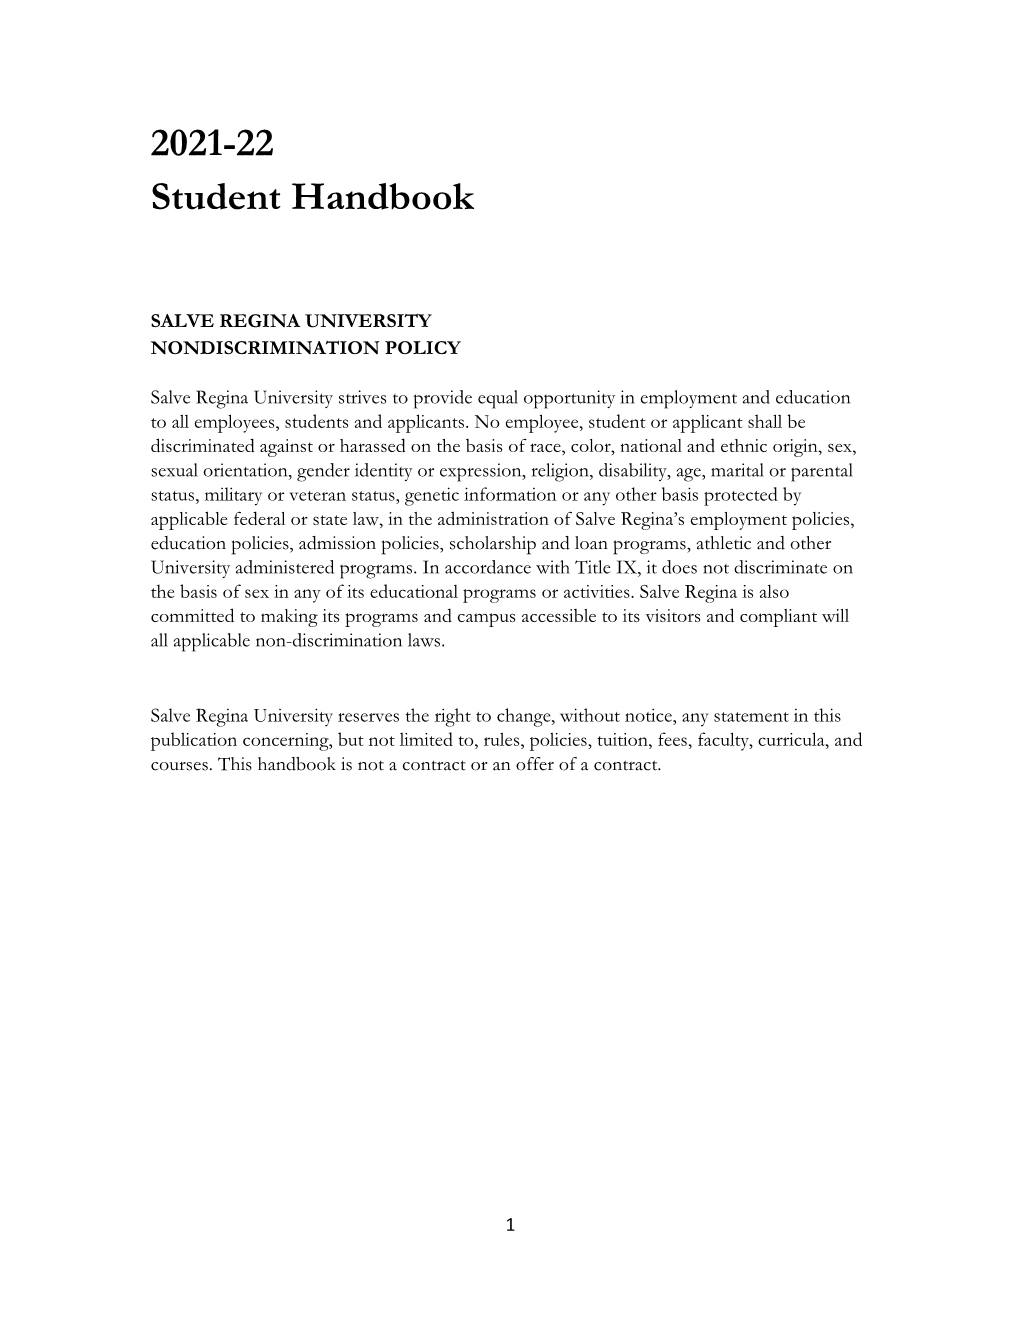 2021-22 Student Handbook